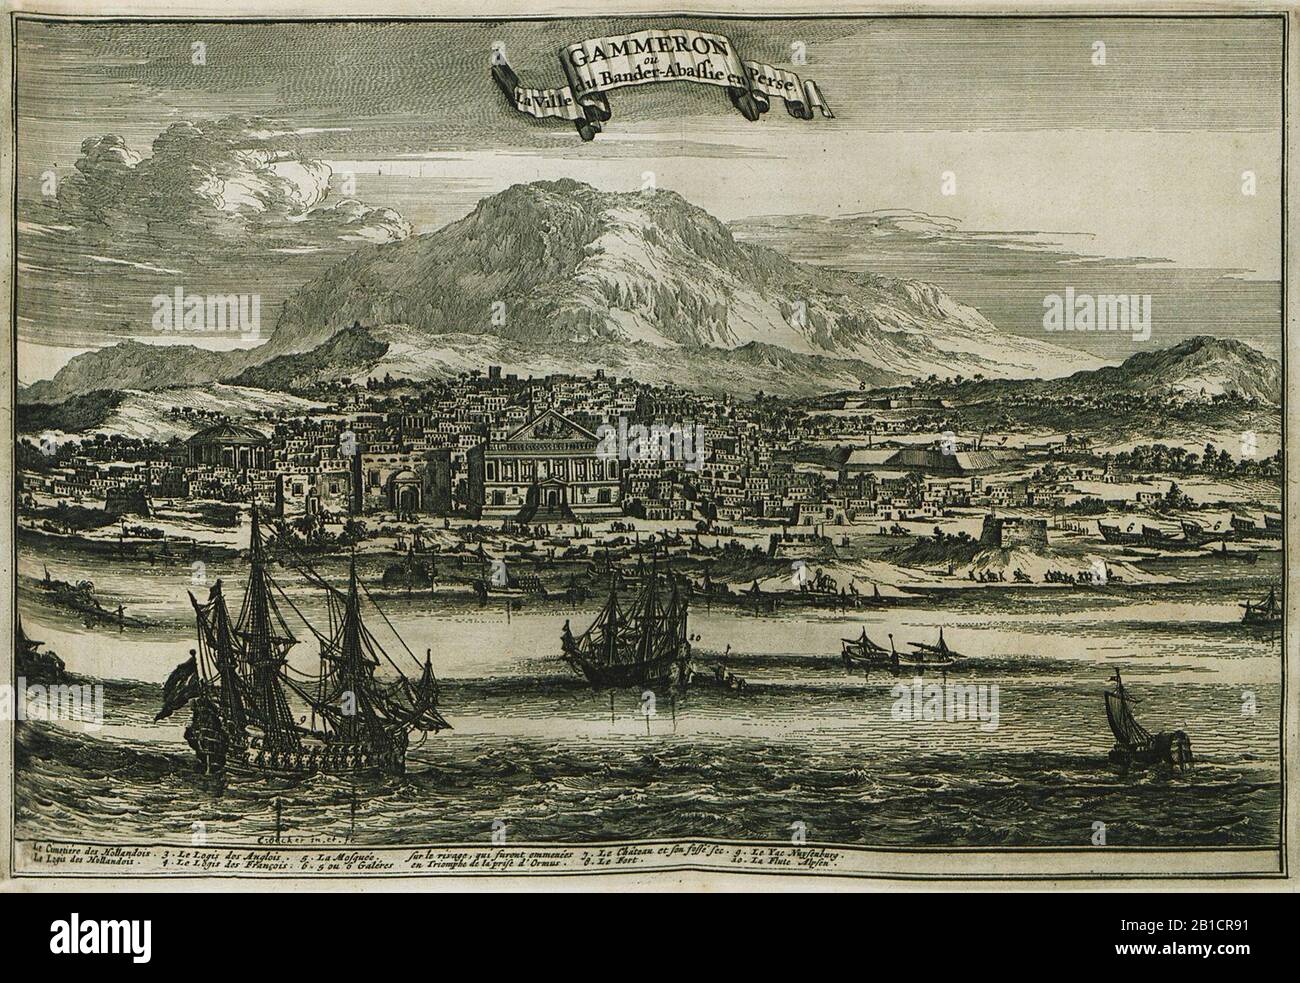 Gammeron ou la ville du Bander-Abasie en Perse - Struys Jan Janszoon - 1681. Foto de stock